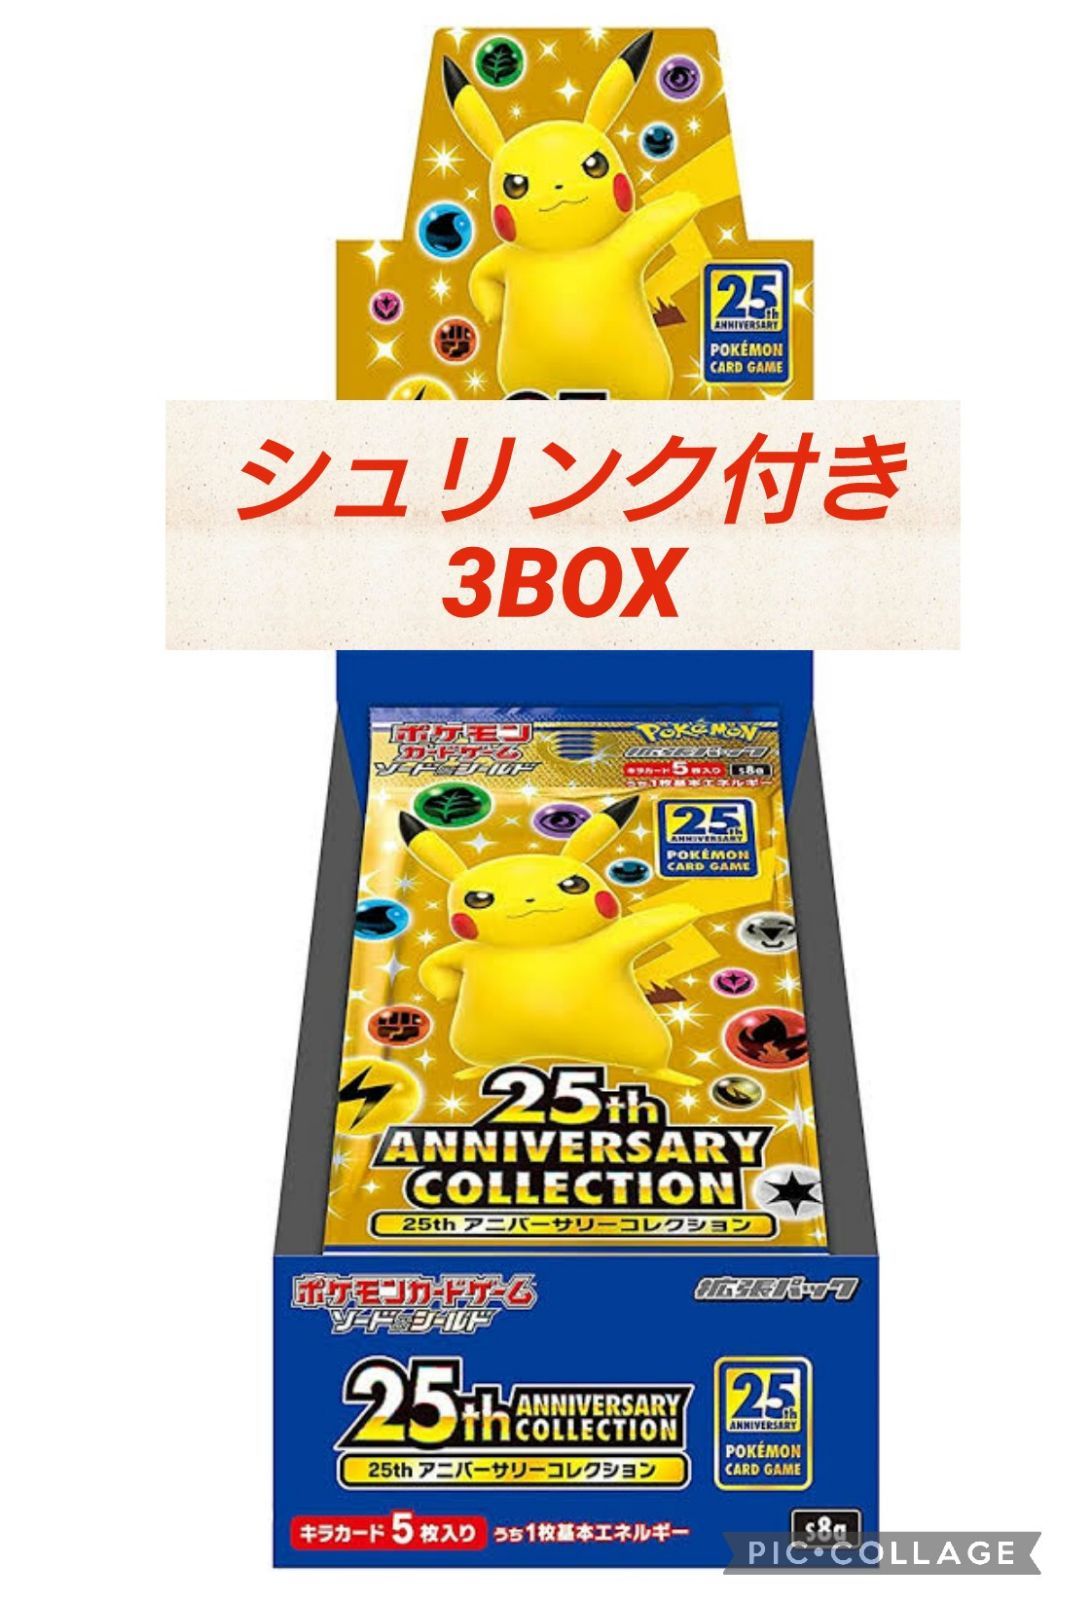 ポケモン 25th anniversary 3BOX - おもちゃの田中 - メルカリ